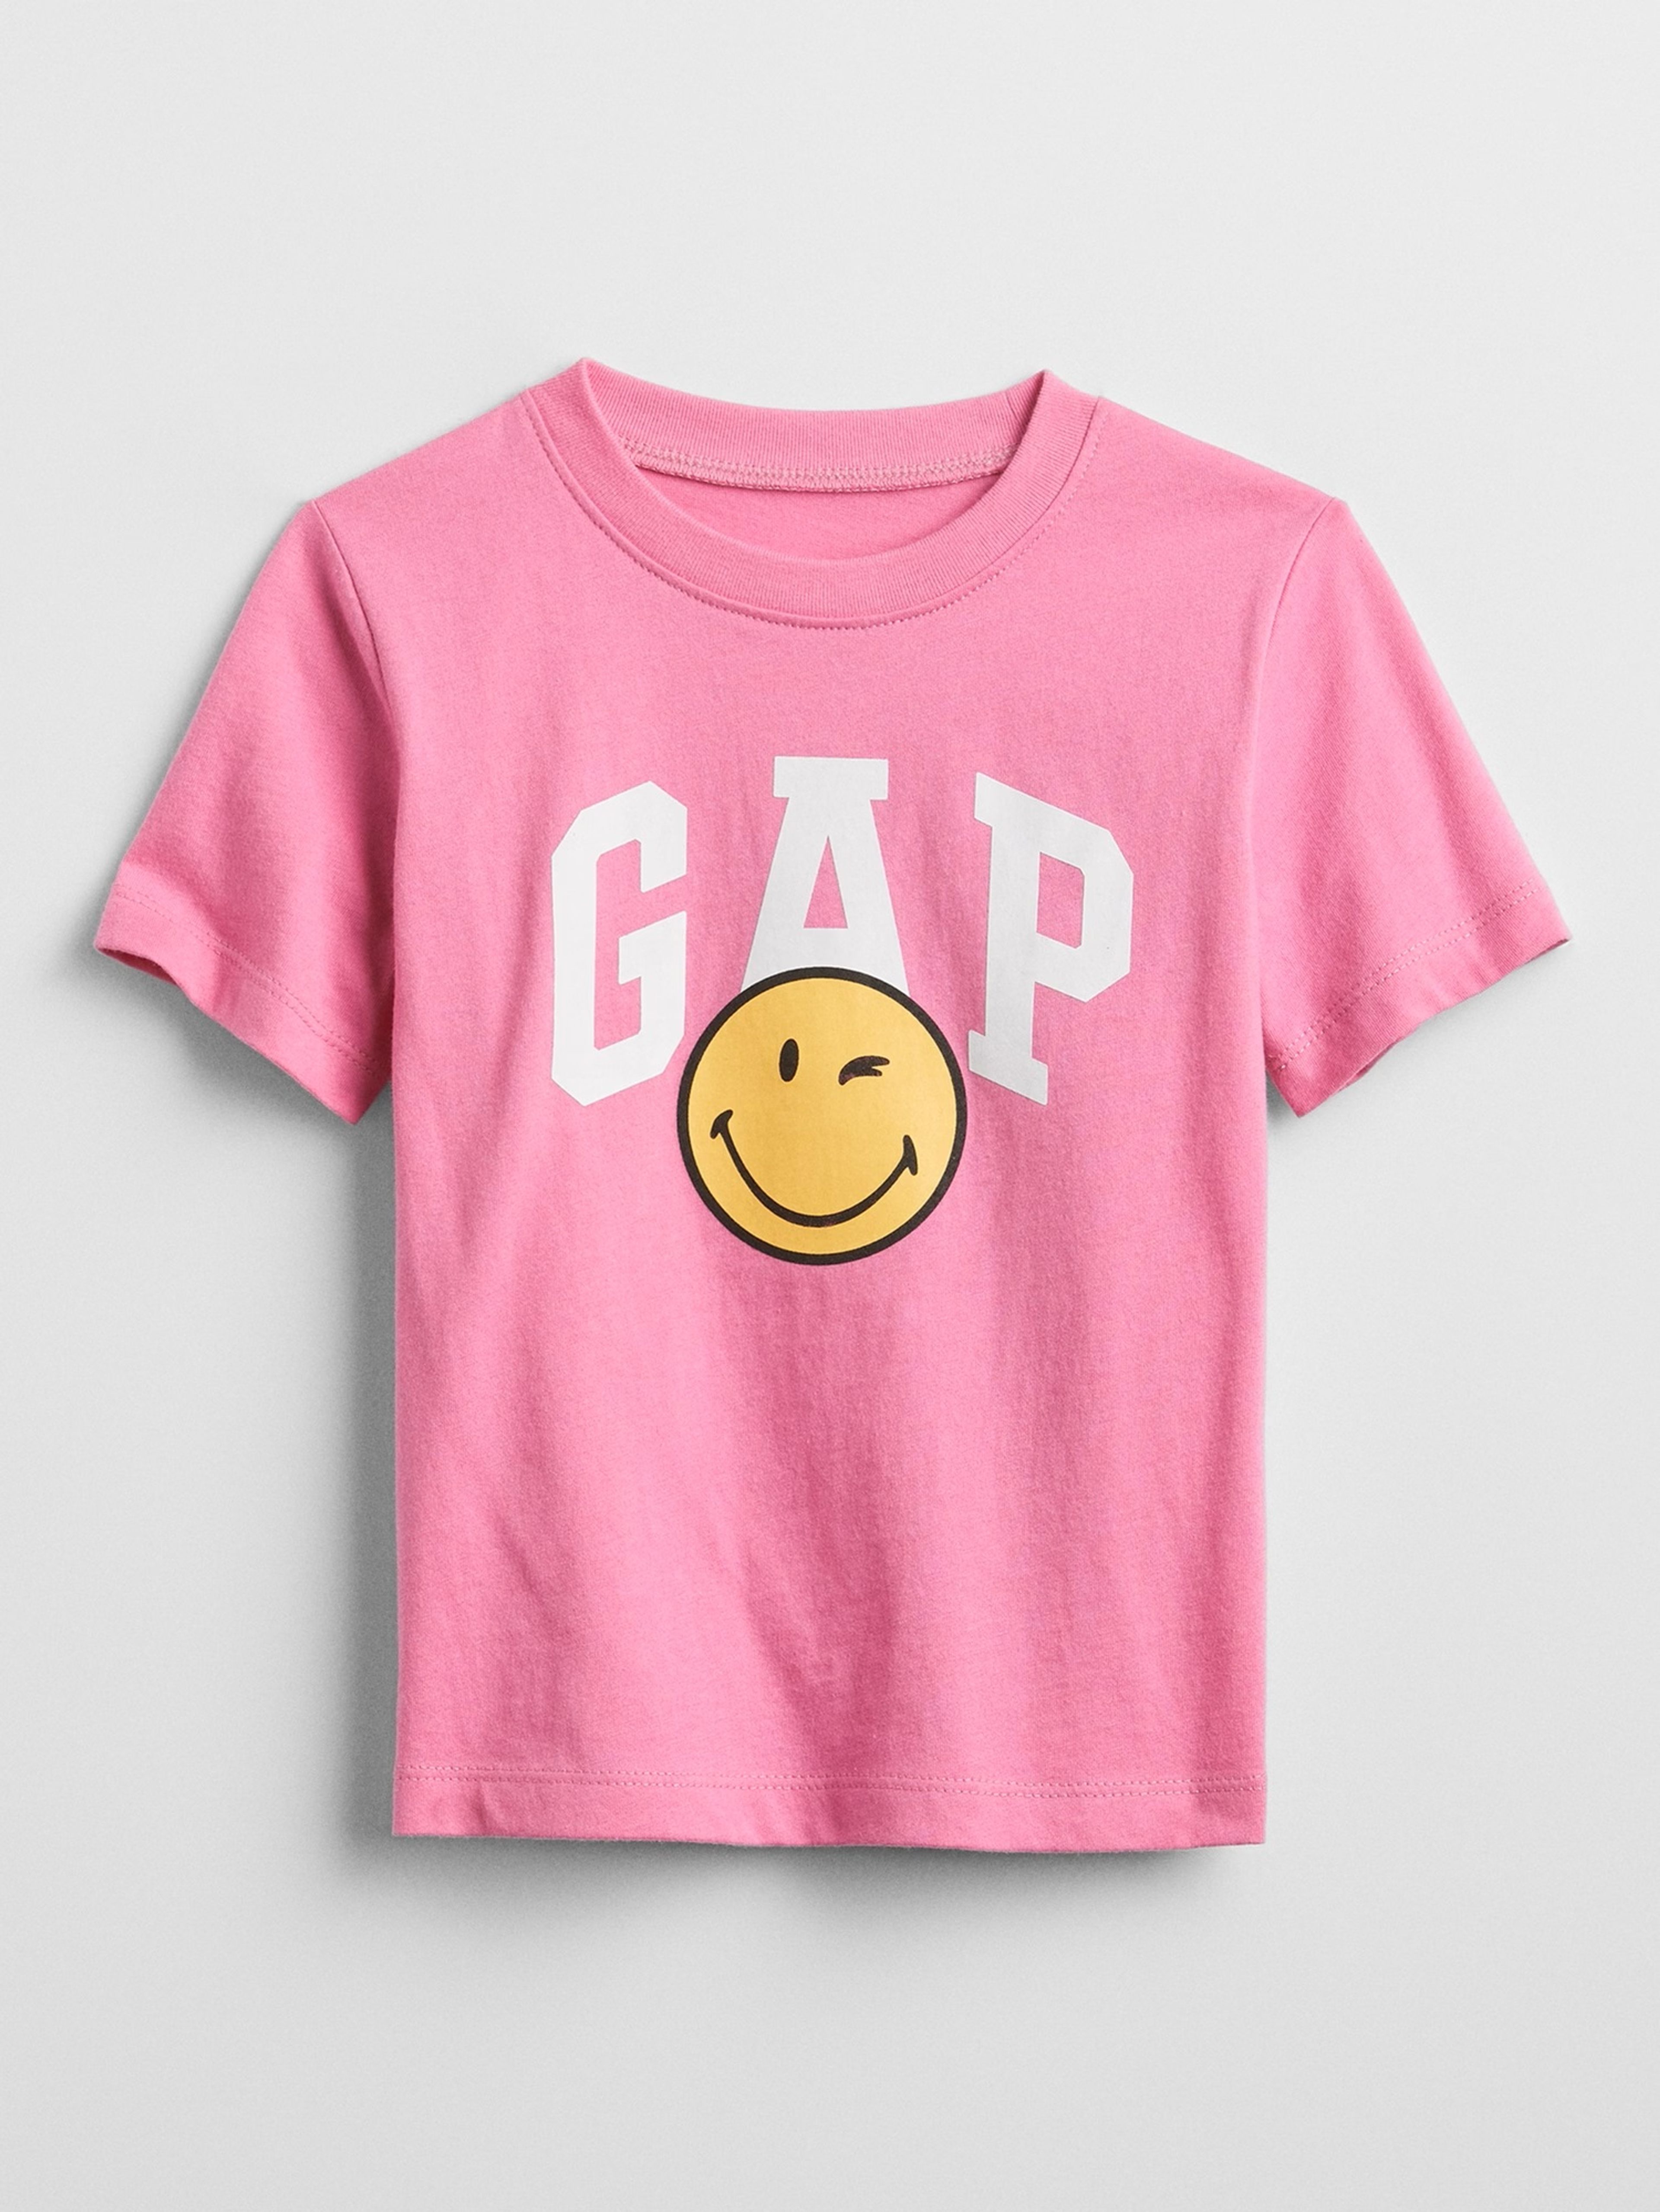 Dětské tričko GAP & SmileyWorld®